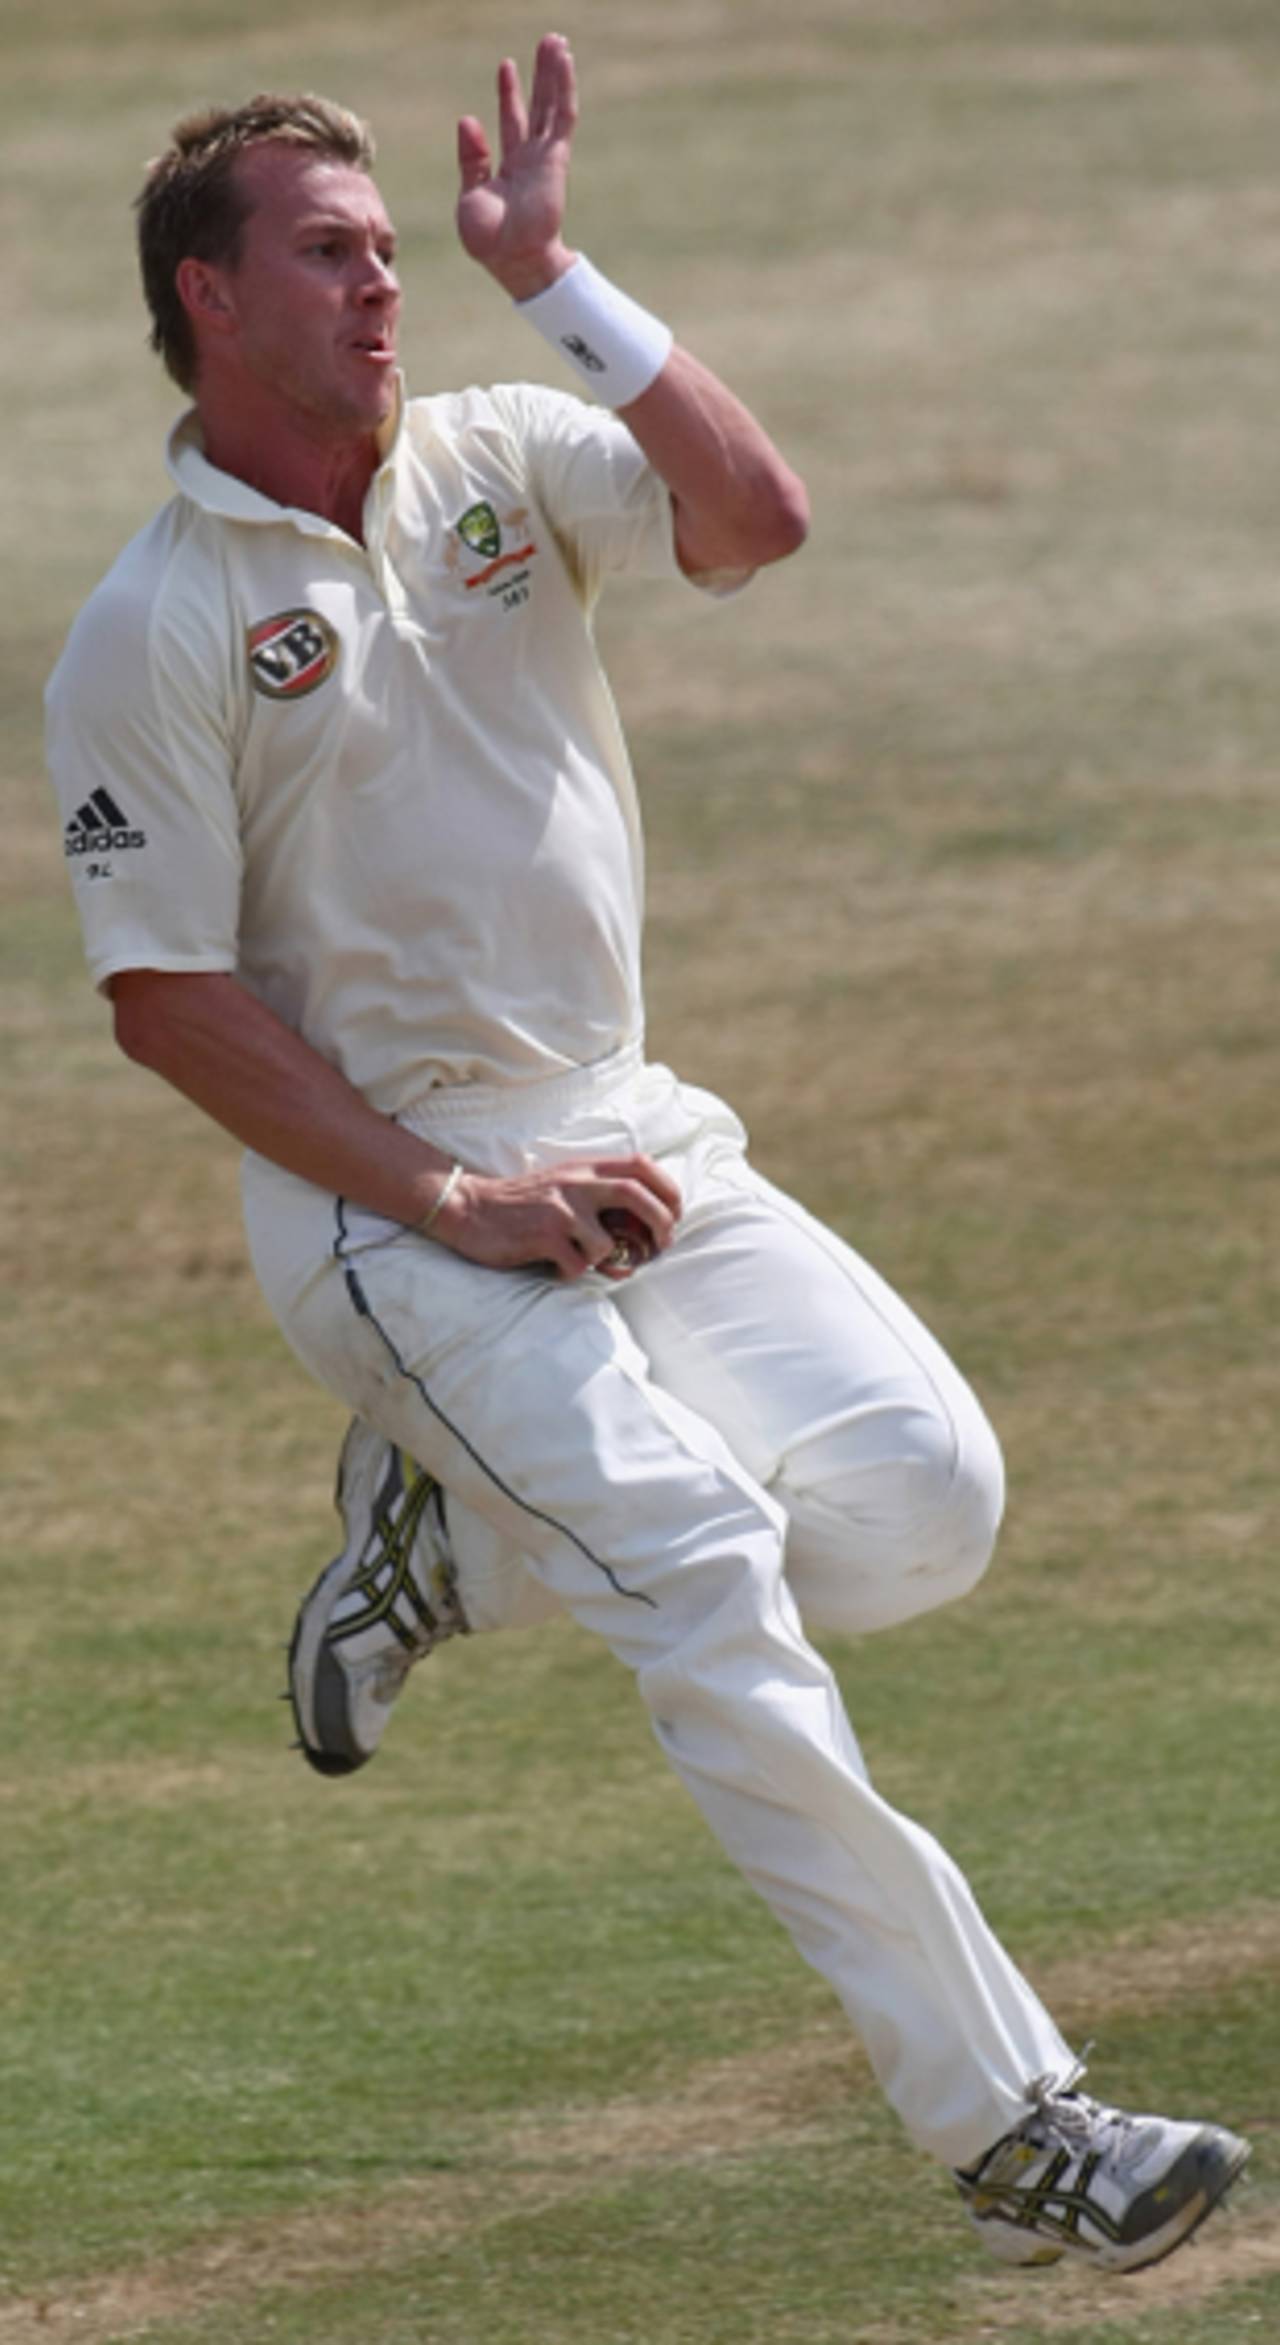 Brett Lee in action, Sussex v Australians, Day 2, Hove, June 25, 2009